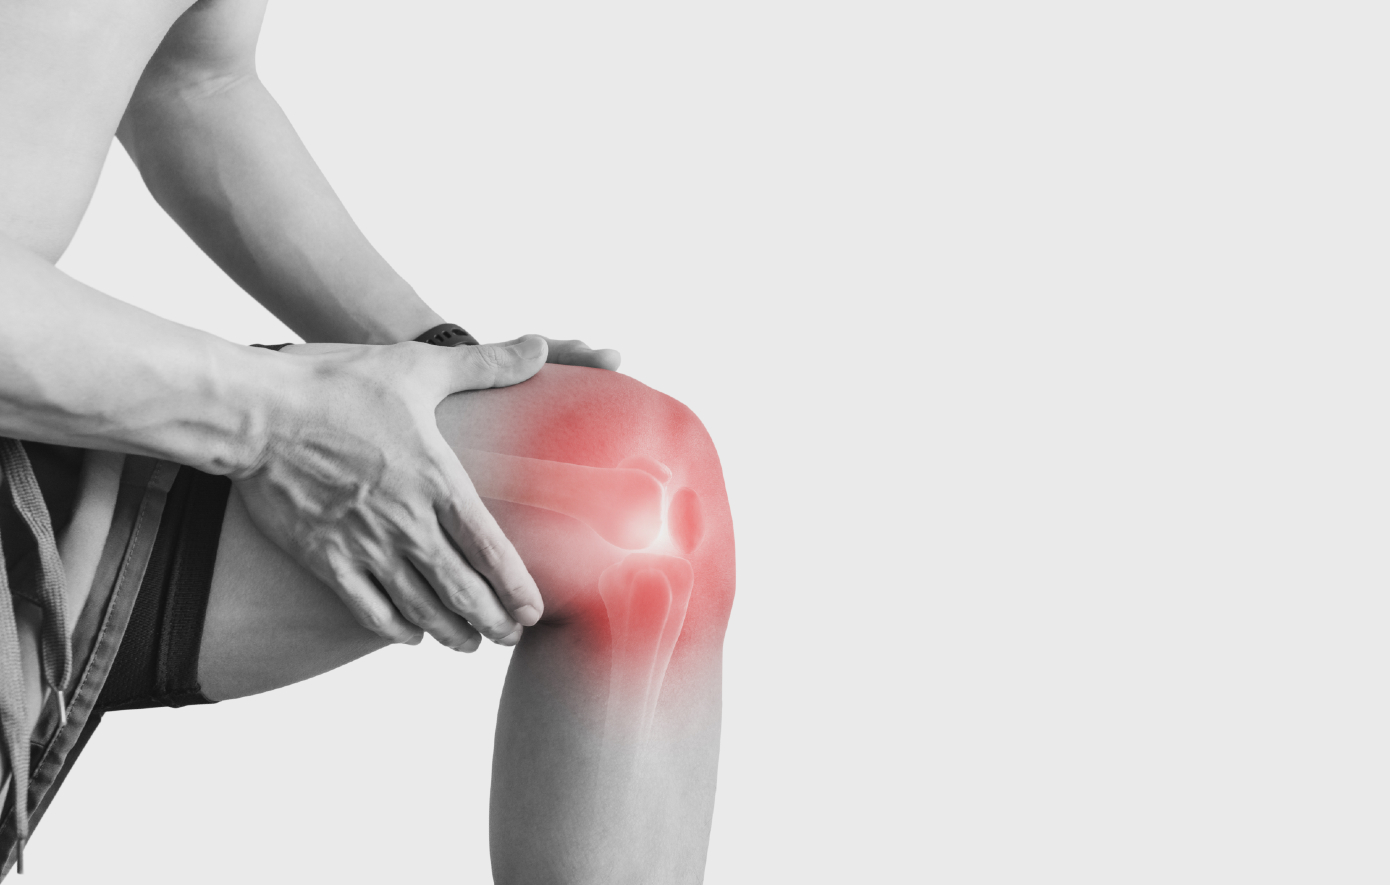 Η Νο1 άσκηση για μείωση της αρθρίτιδας και του πόνου στα γόνατα